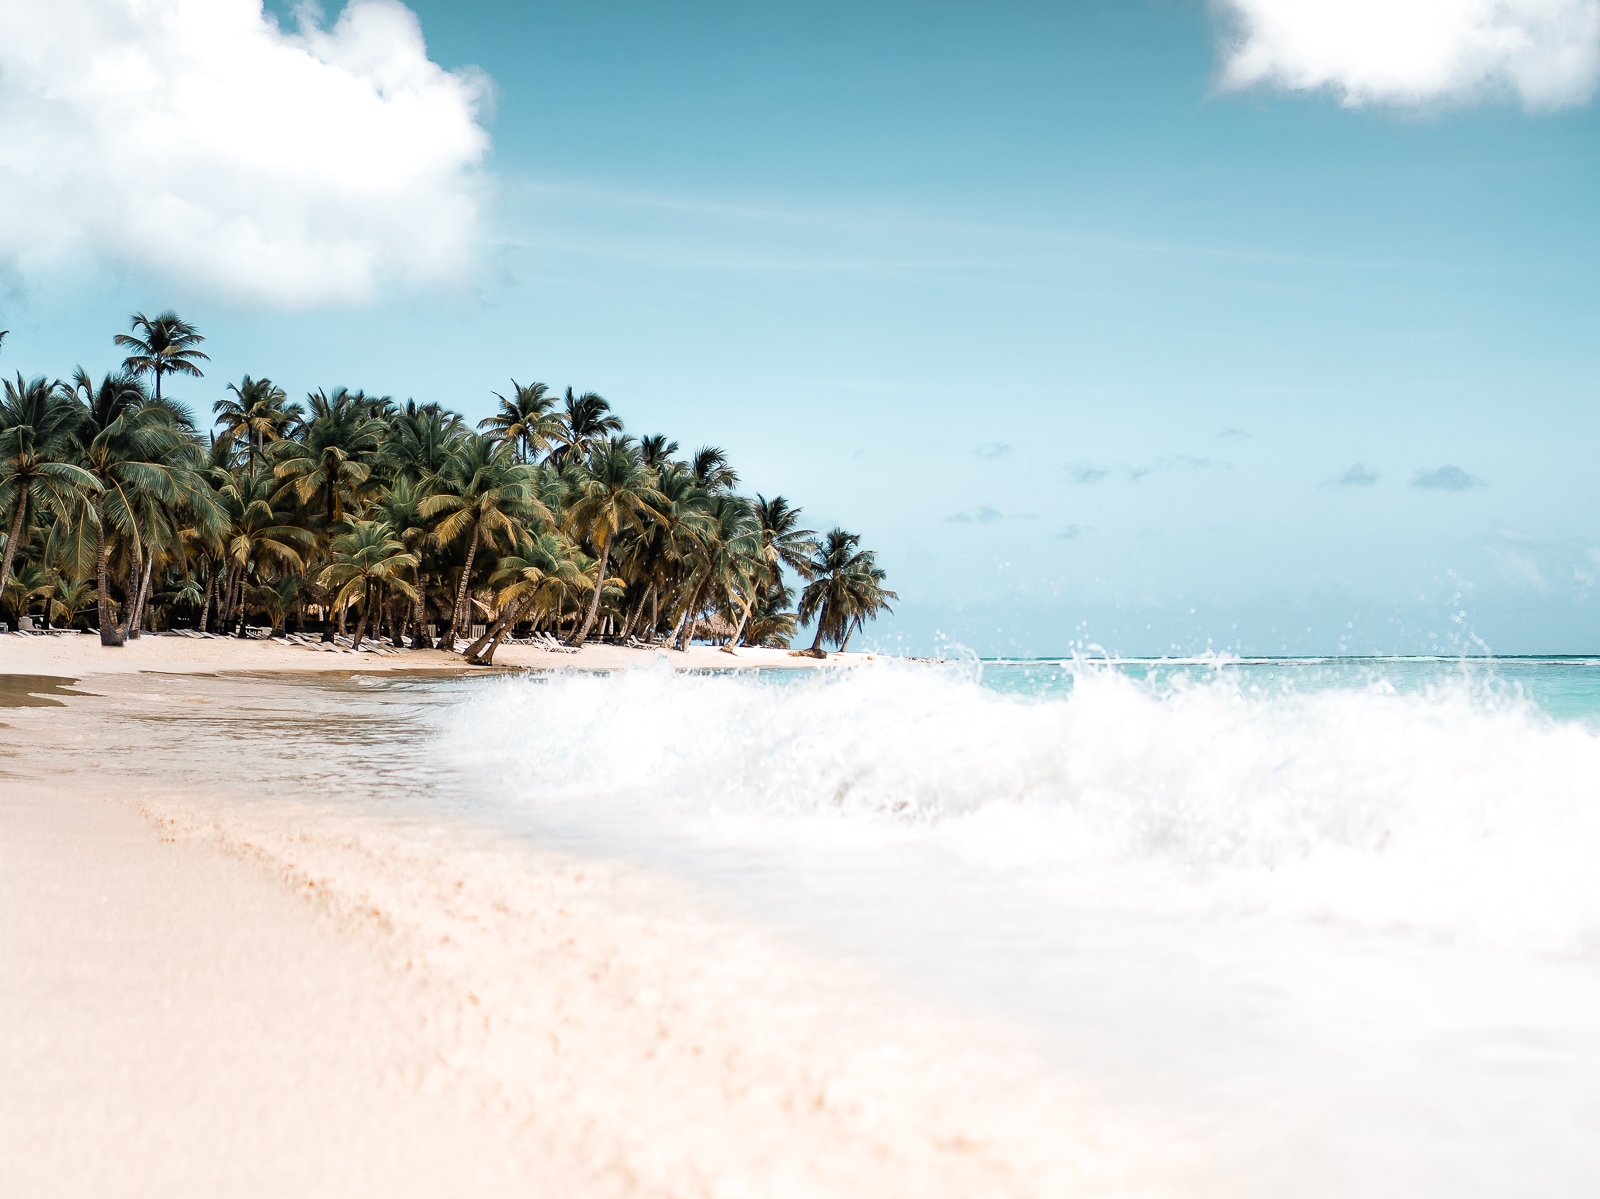 Dominikanische Republik - Travel Guide - Reisebericht - Wissenswertes für deine Karibik Reise - Tipps für deine Reise - Reisetipps Dom Rep. - Fashionladyloves by Tamara Wagner - Travel Blog - Reiseblog 